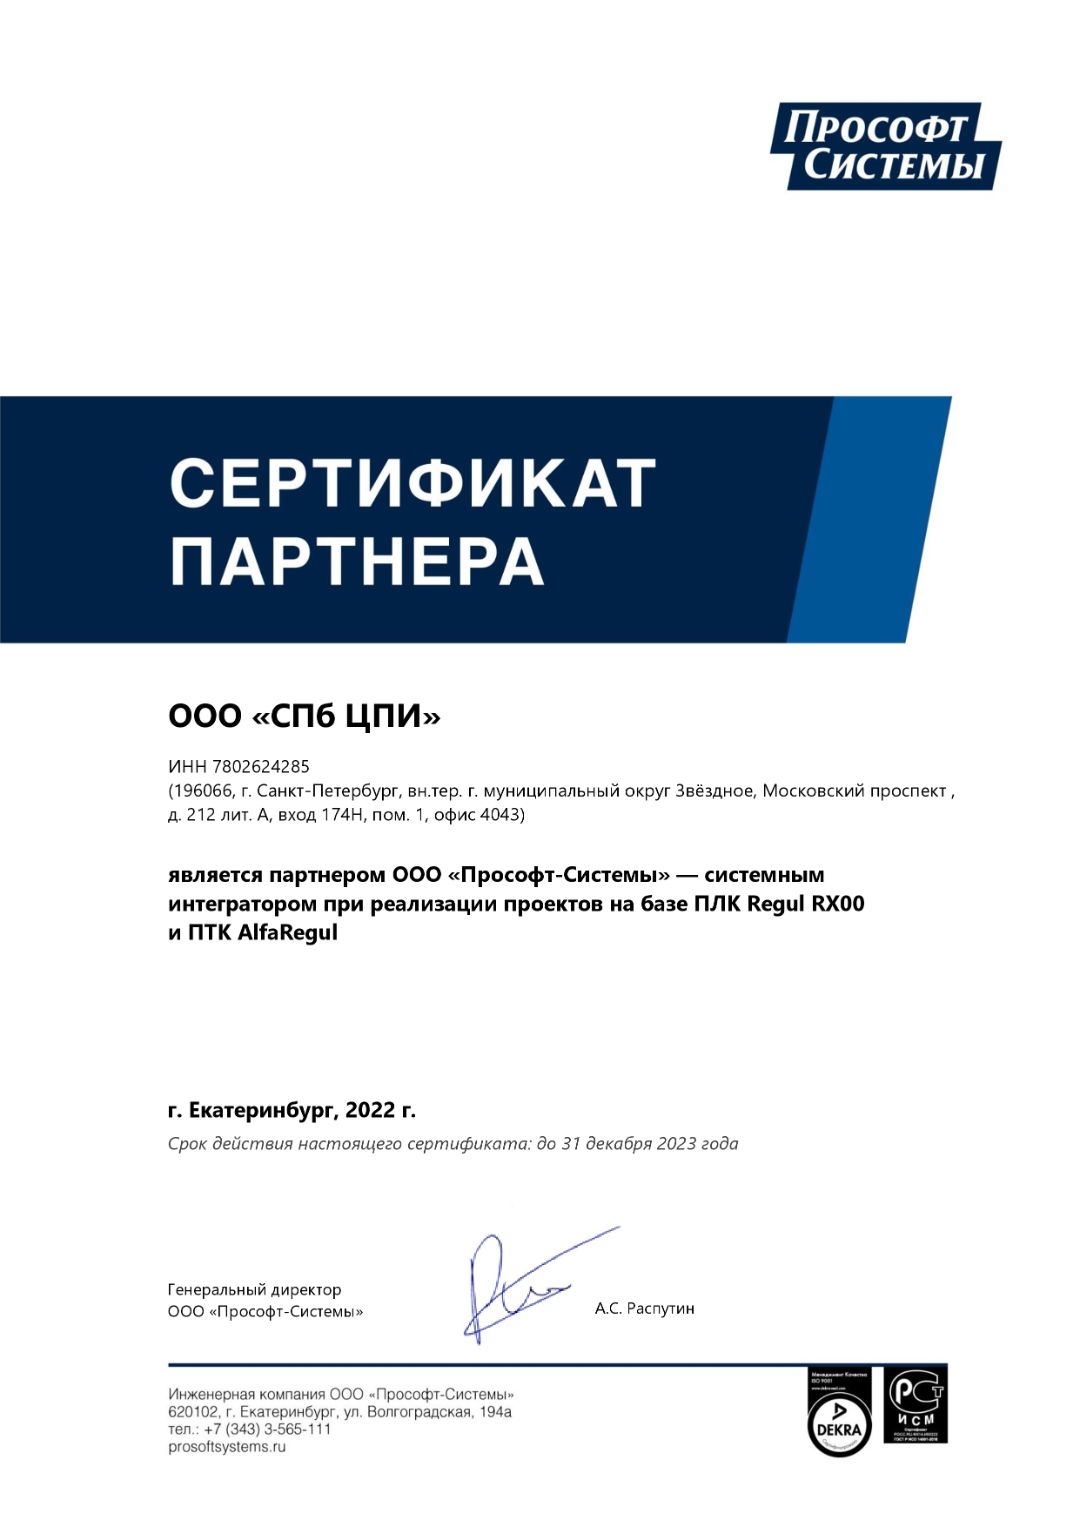 Сертификат партнёра Прософт